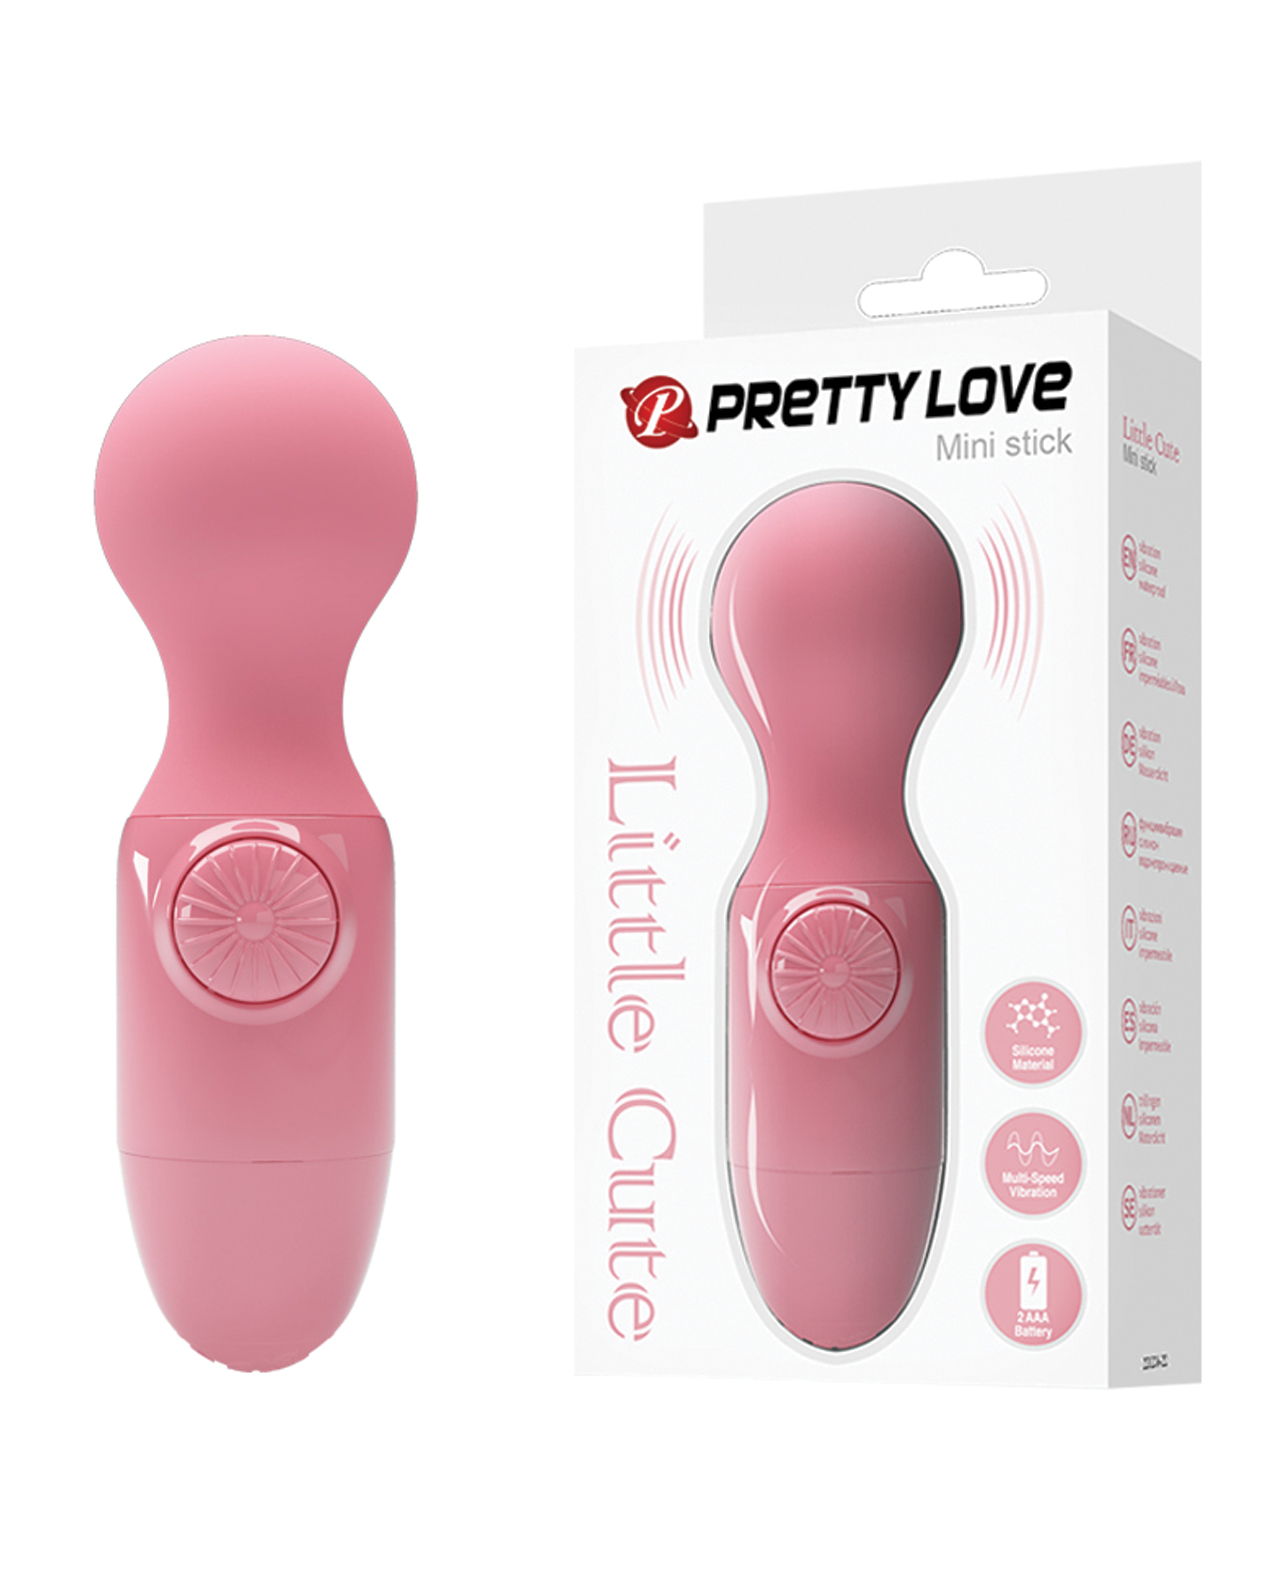 Pretty Love Little Cute Mini Stick body massager in Hot Pink